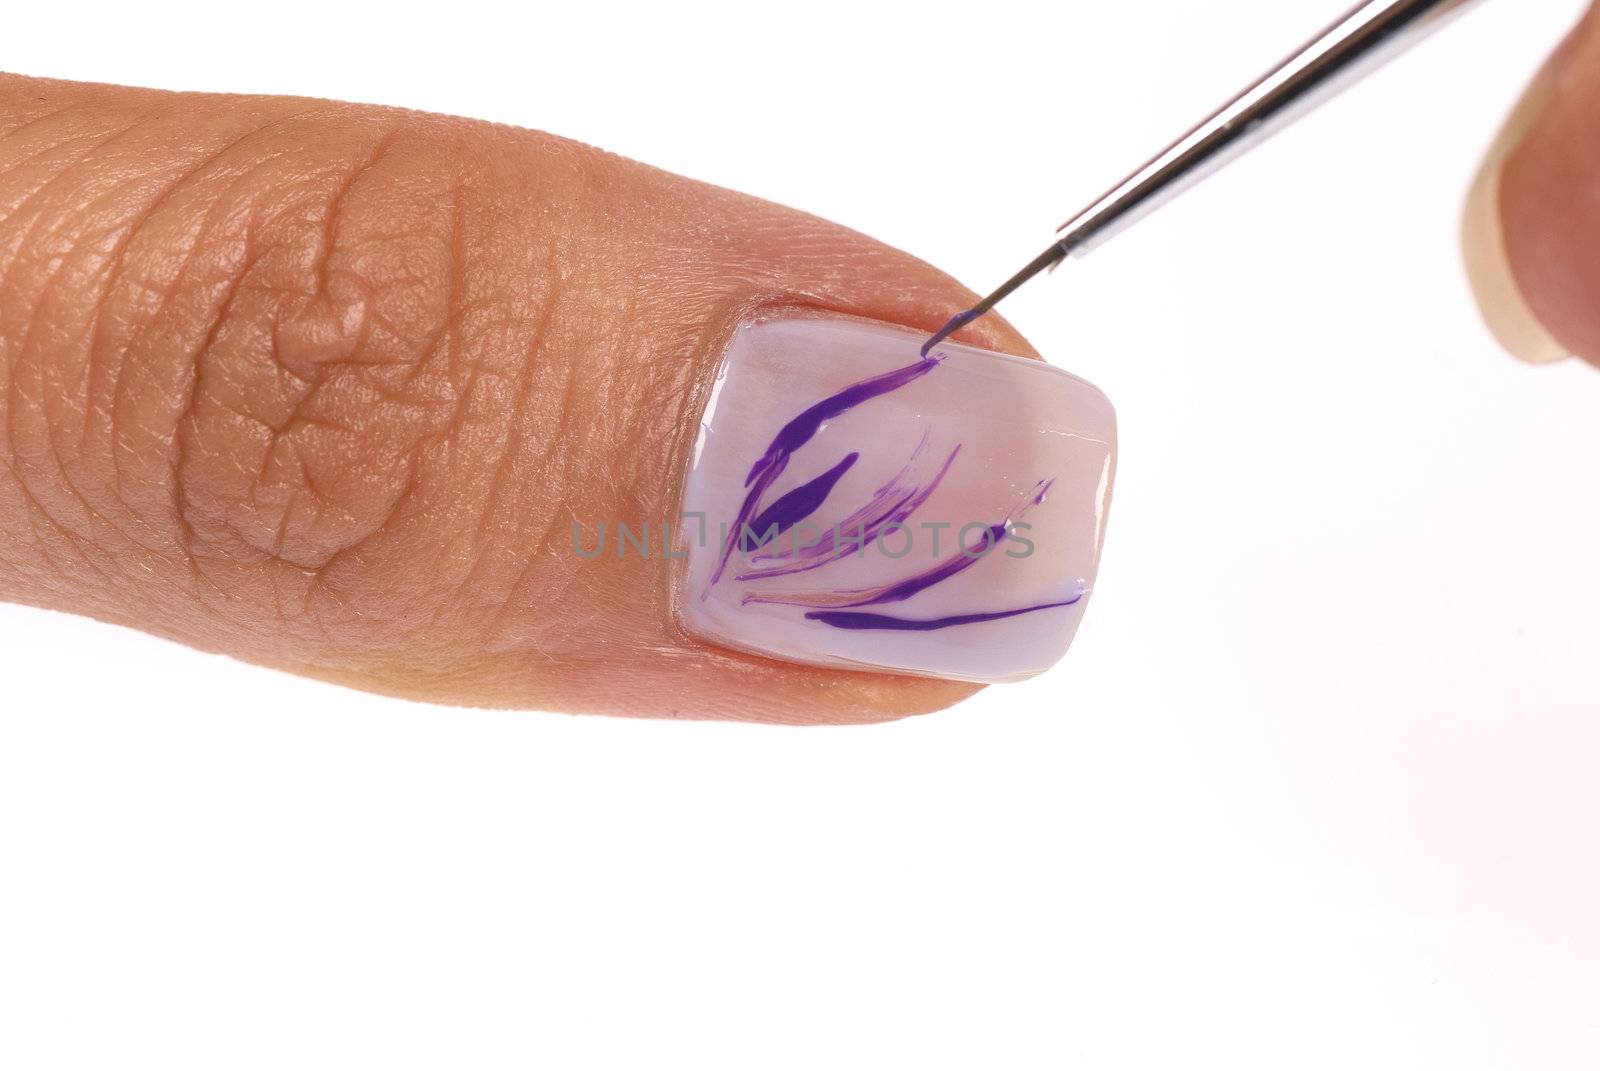 Nail art by hemeroskopion